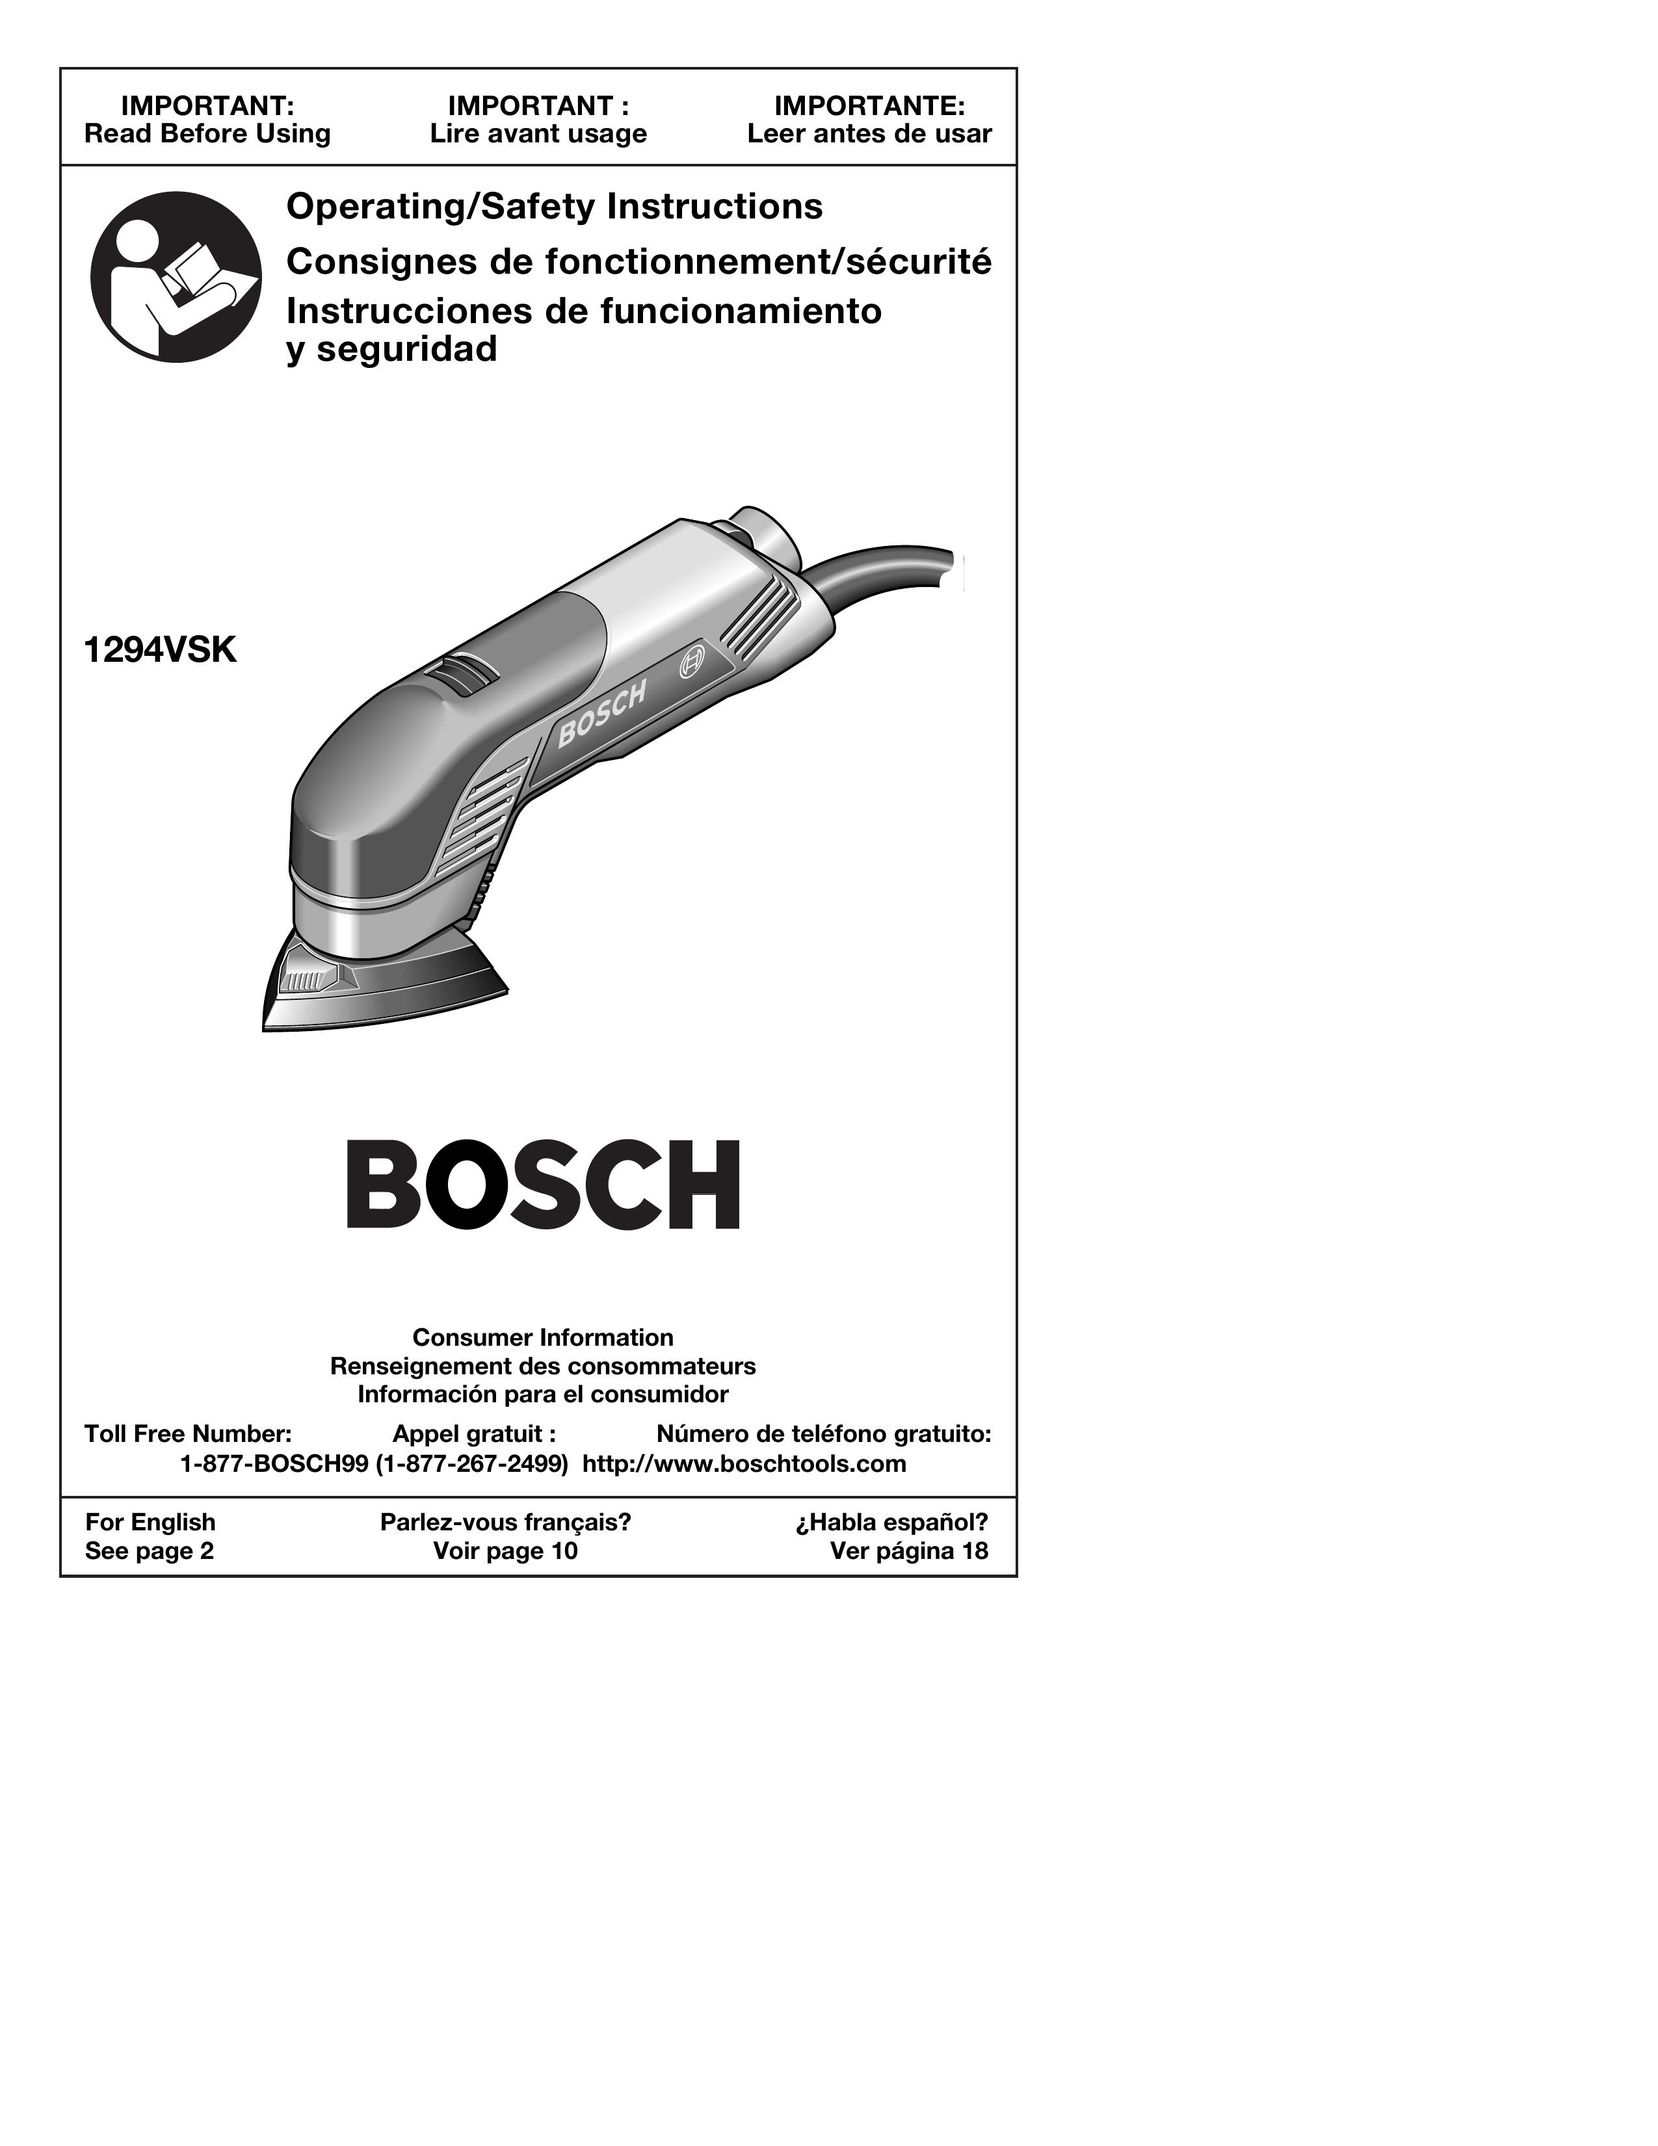 Bosch Power Tools 1294VSK Cordless Sander User Manual